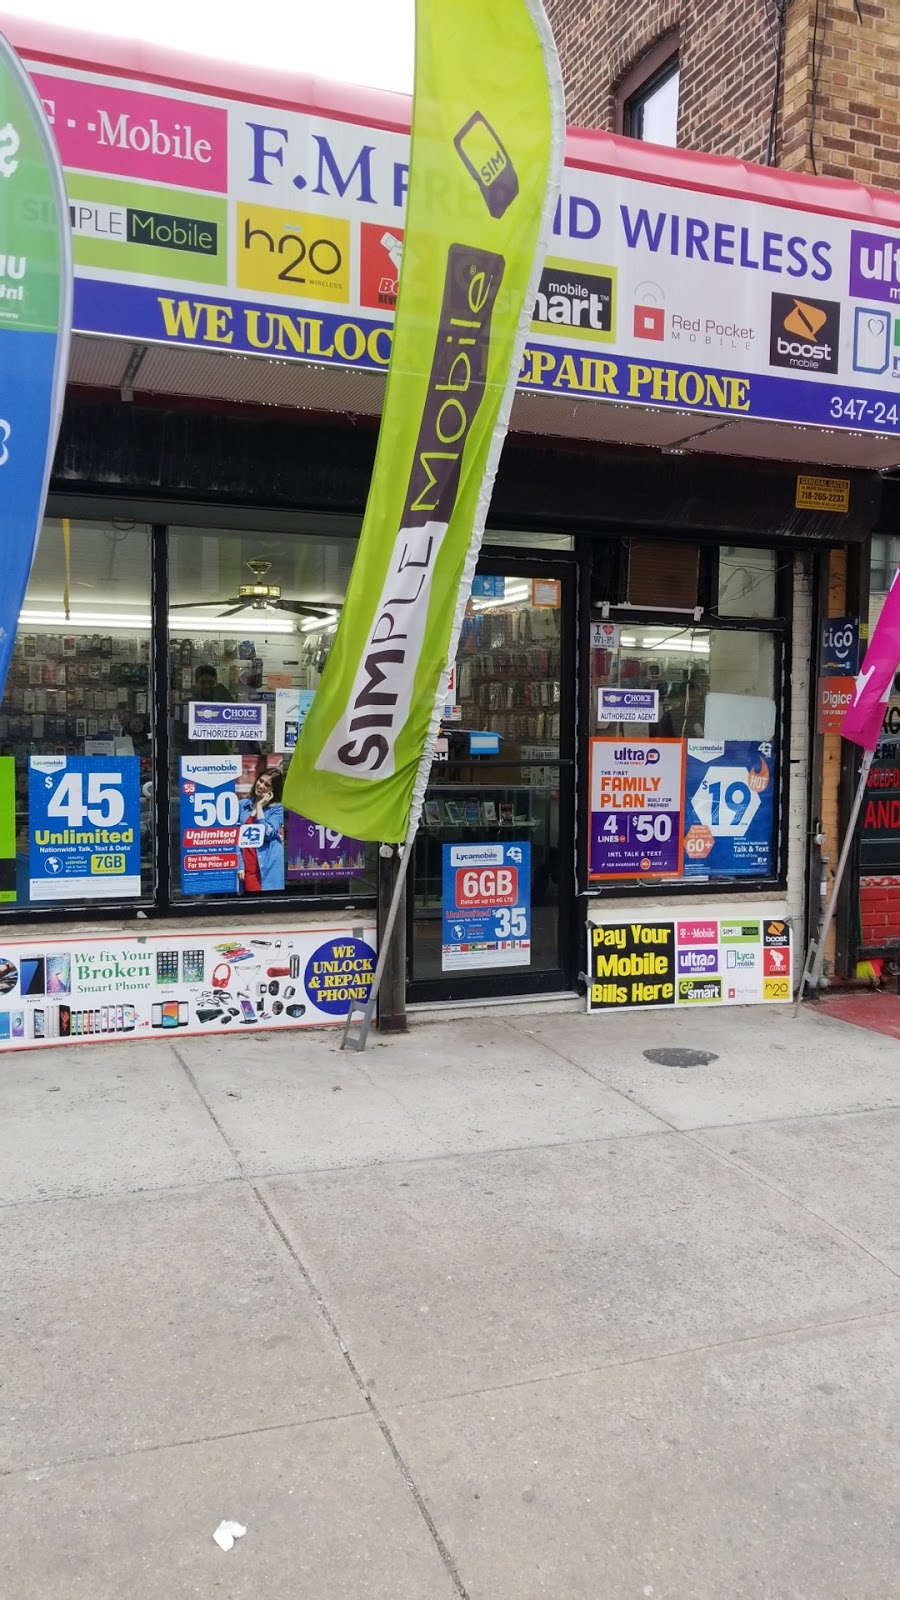 FM Prepaid Wireless Inc | 407 Pine St, Brooklyn, NY 11208 | Phone: (347) 240-3931